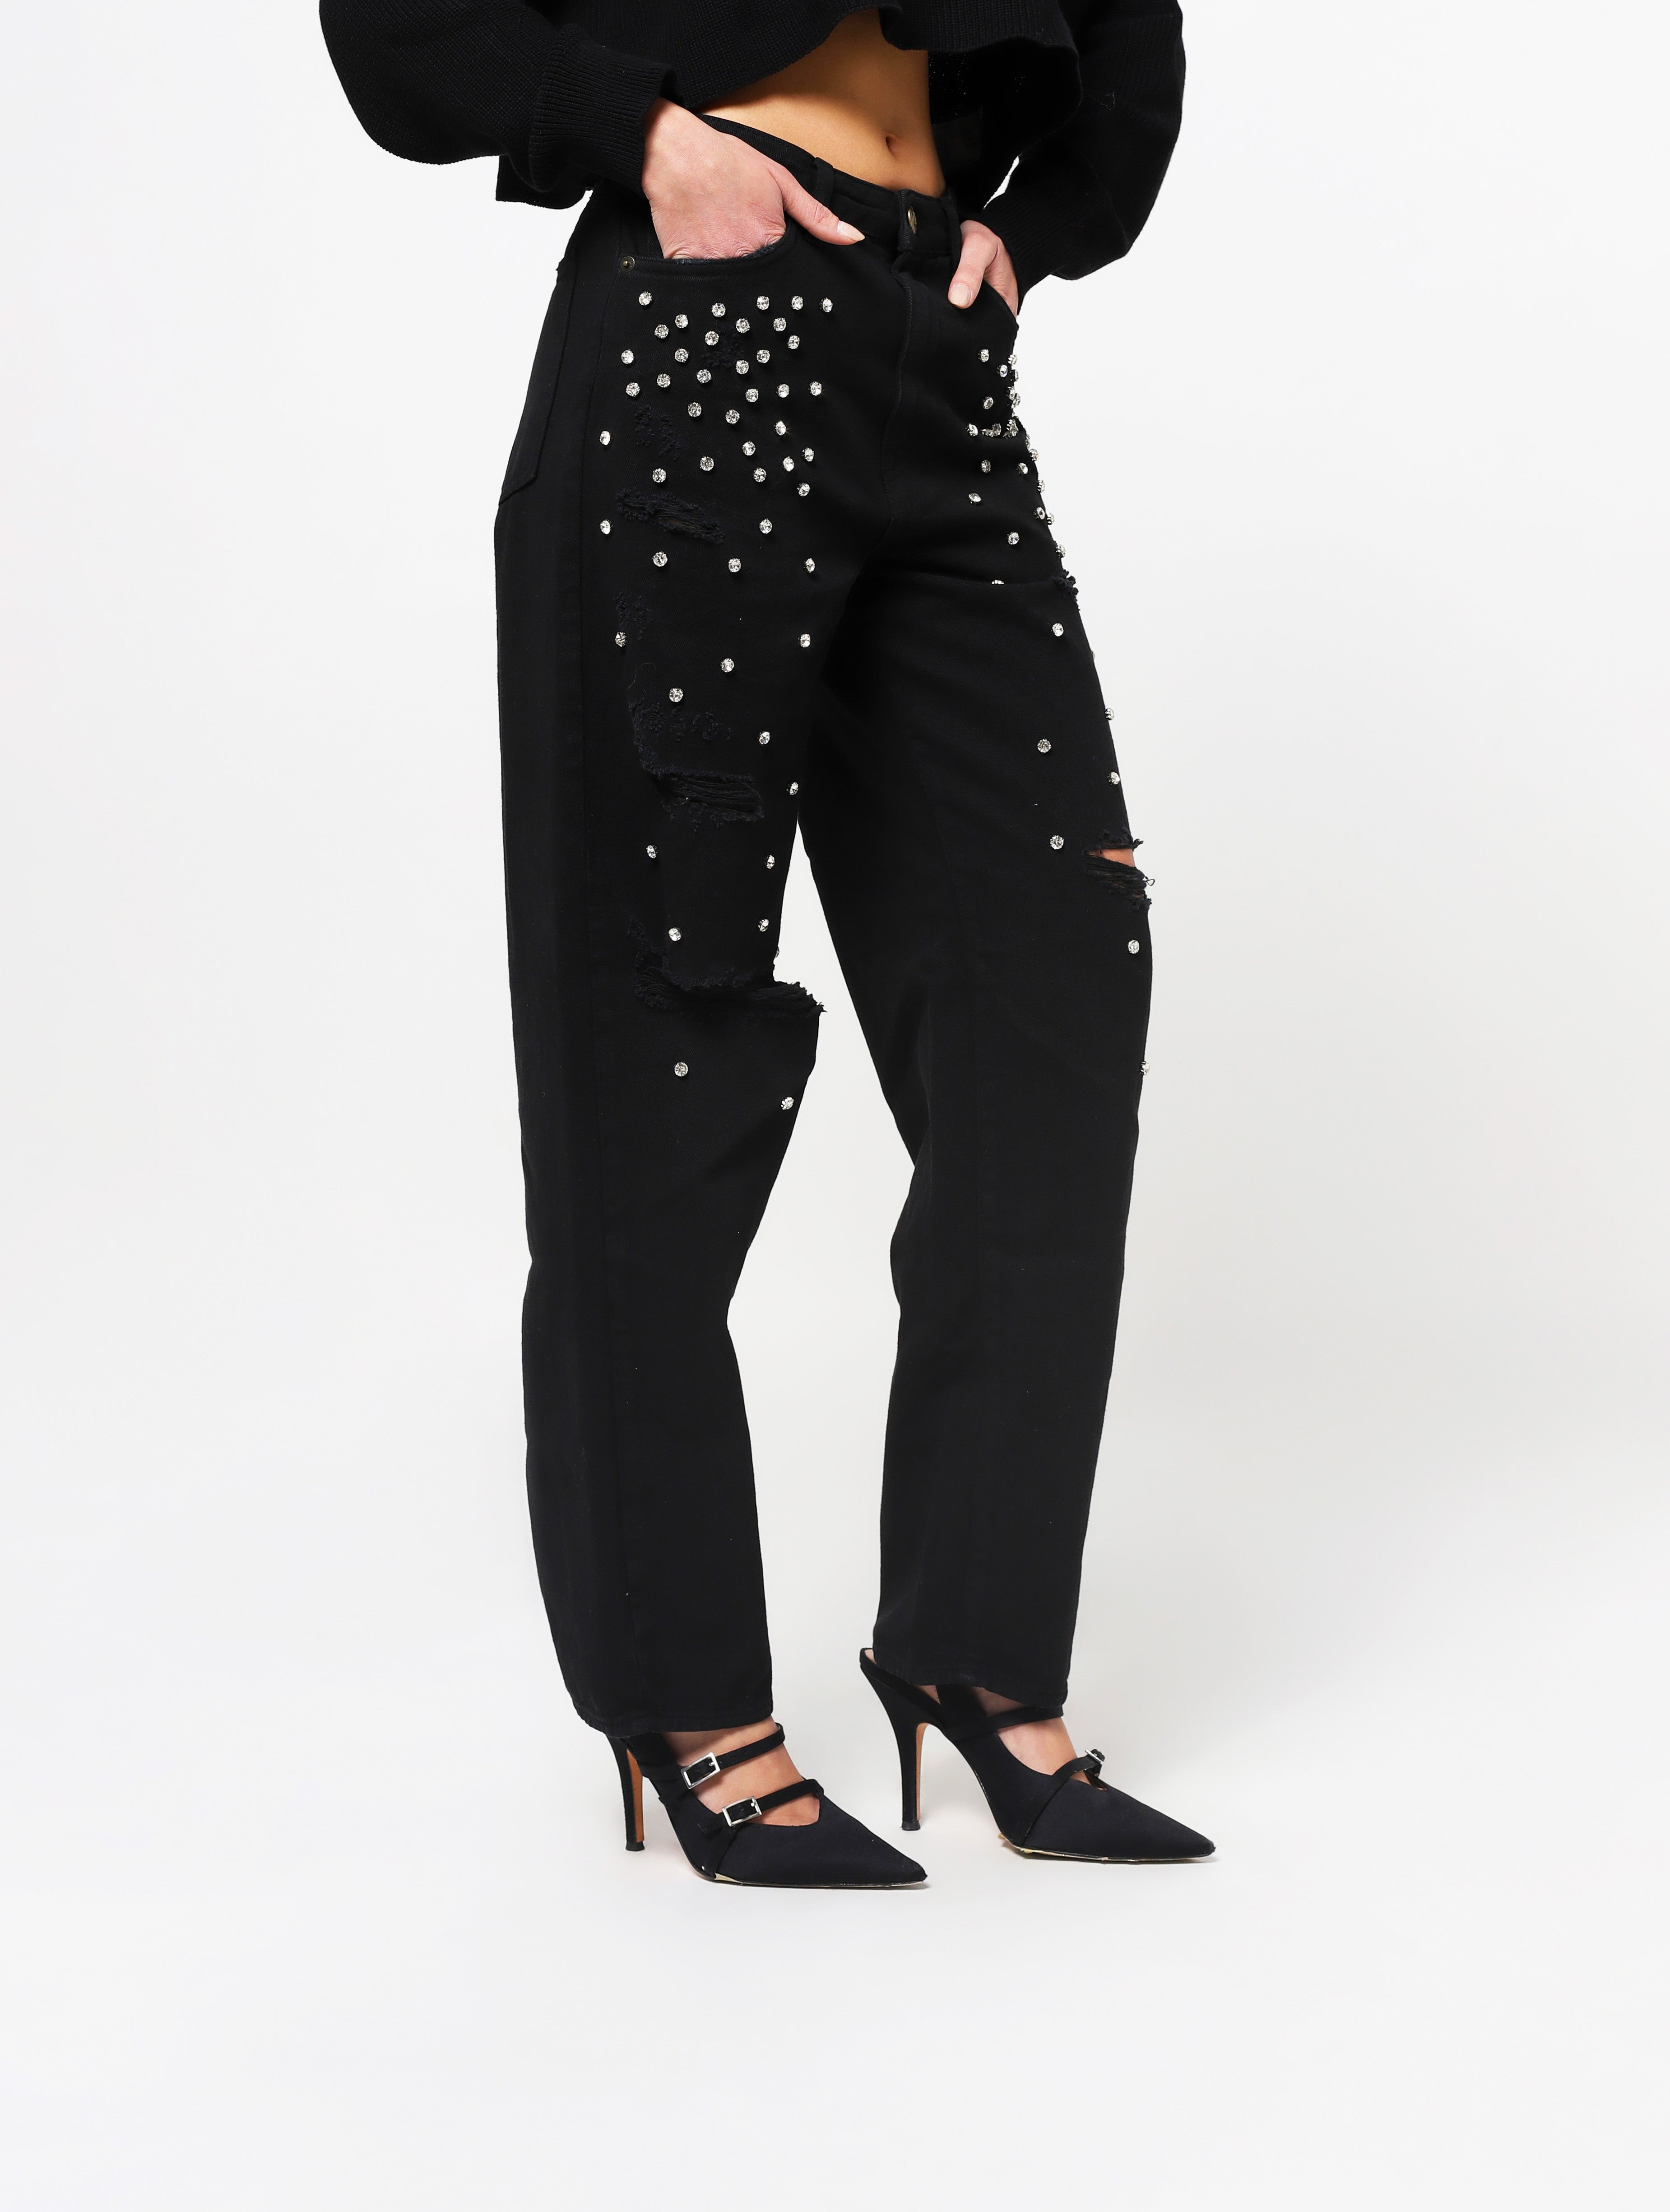 Jeans con 5 tasche, gioielli applicati e lacerazioni sulla parte frontale del pantalone, patch applicata posteriore piccola con nome del brand - nero woman  - 2